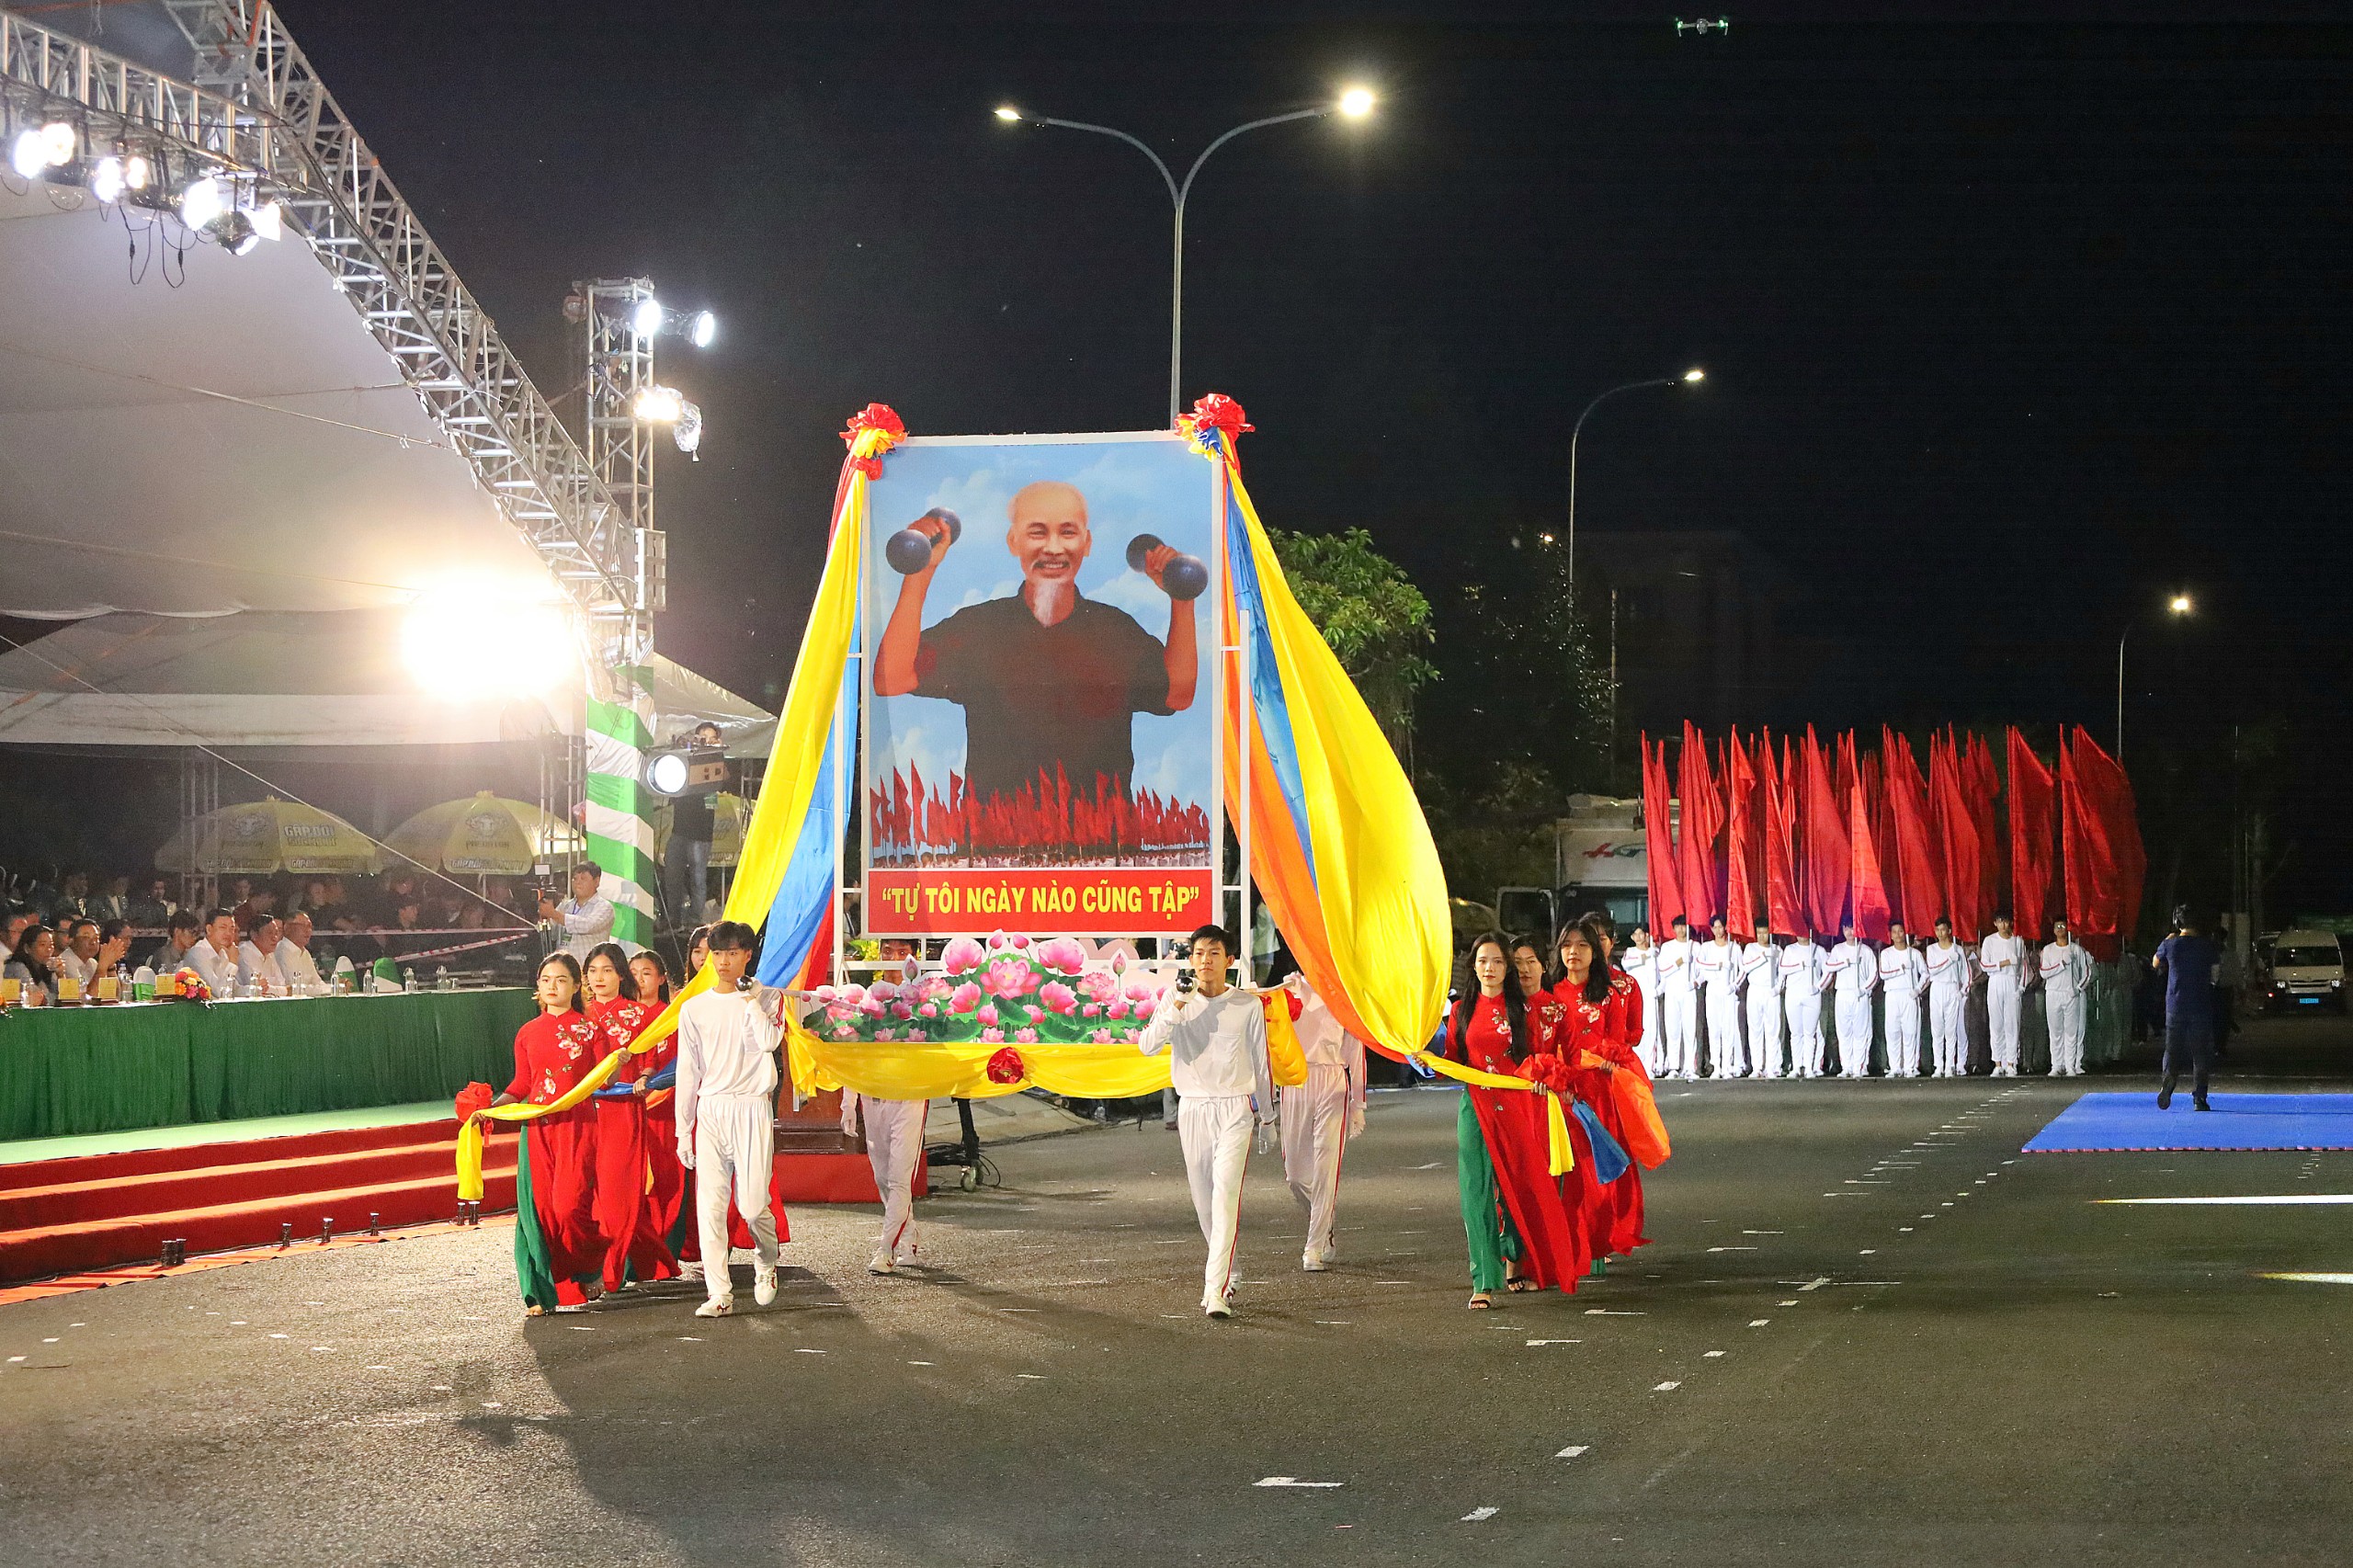 Khối rước kiệu ảnh Bác tại lễ khai mạc Đại hội Thể thao đồng bằng sông Cửu Long lần thứ IX và Giải Marathon quốc tế “Vietcombank Mekong Delta” Hậu Giang lần thứ IV năm 2023.